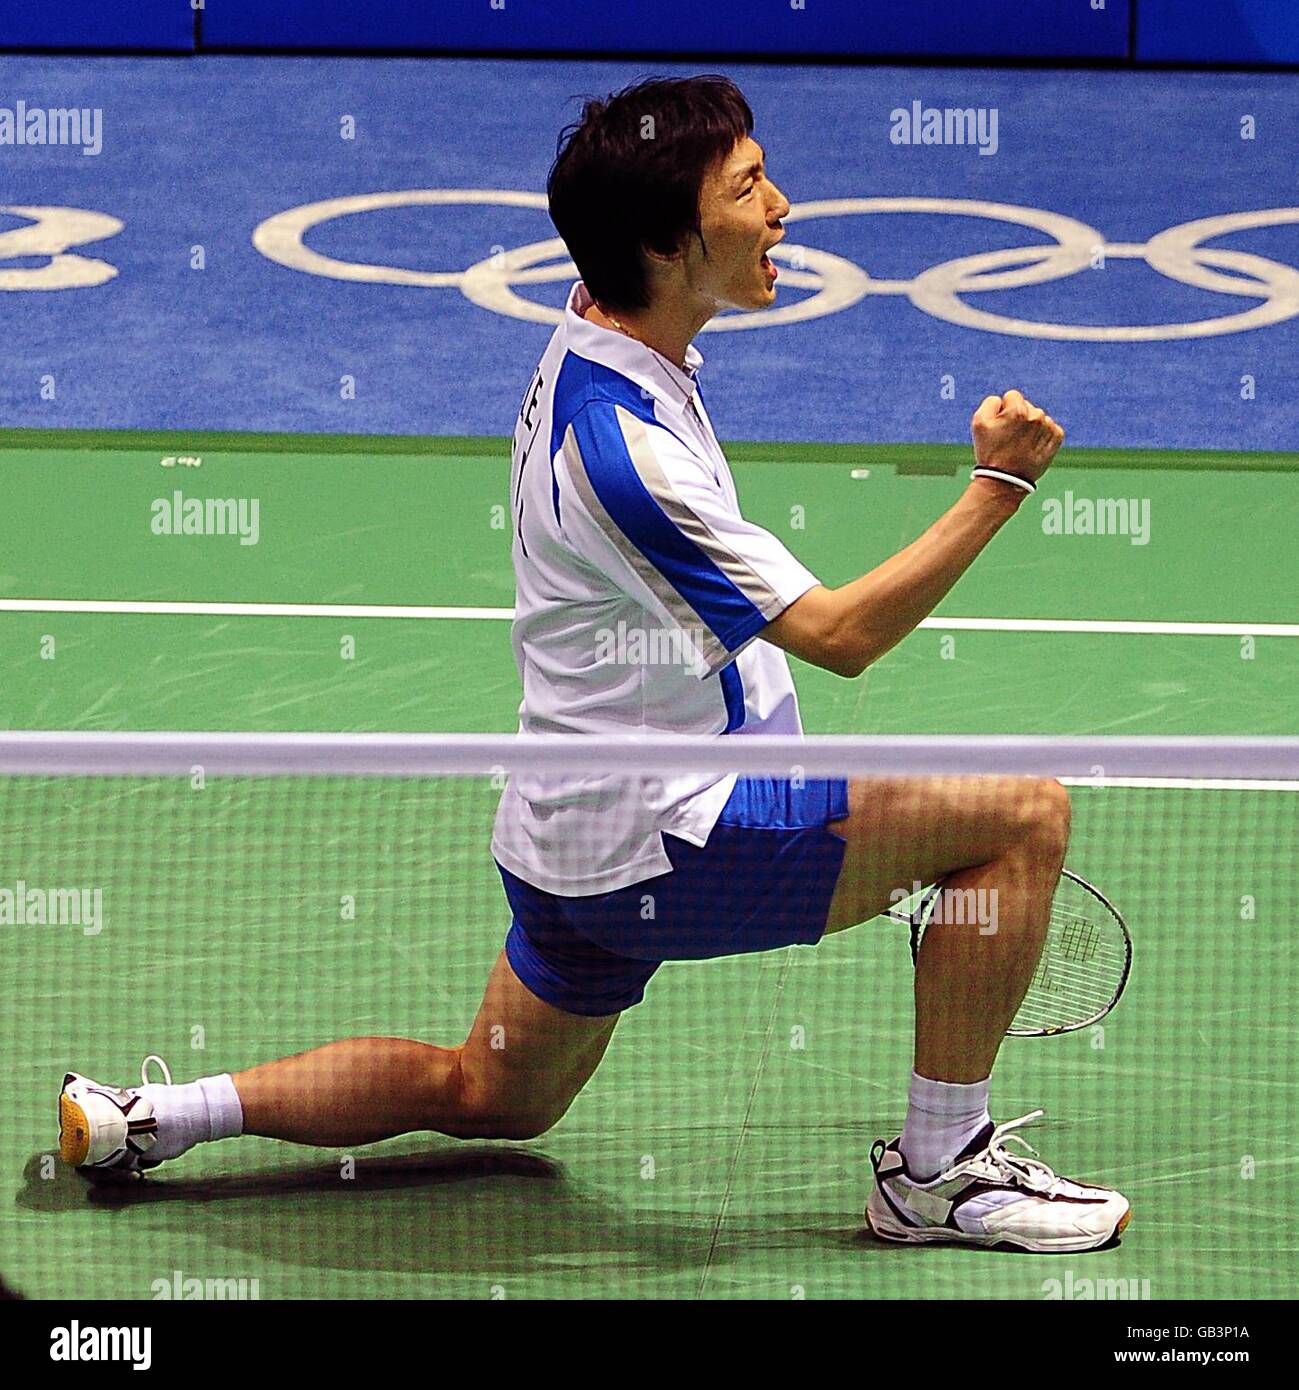 Lee Hyunil della Corea celebra la vittoria della prima partita della sua partita contro il Boa Chunlai della Cina alla palestra dell'Università di tecnologia di Pechino durante i Giochi Olimpici del 2008 a Pechino, Cina. Hyunil ha vinto la partita 2-0. Foto Stock